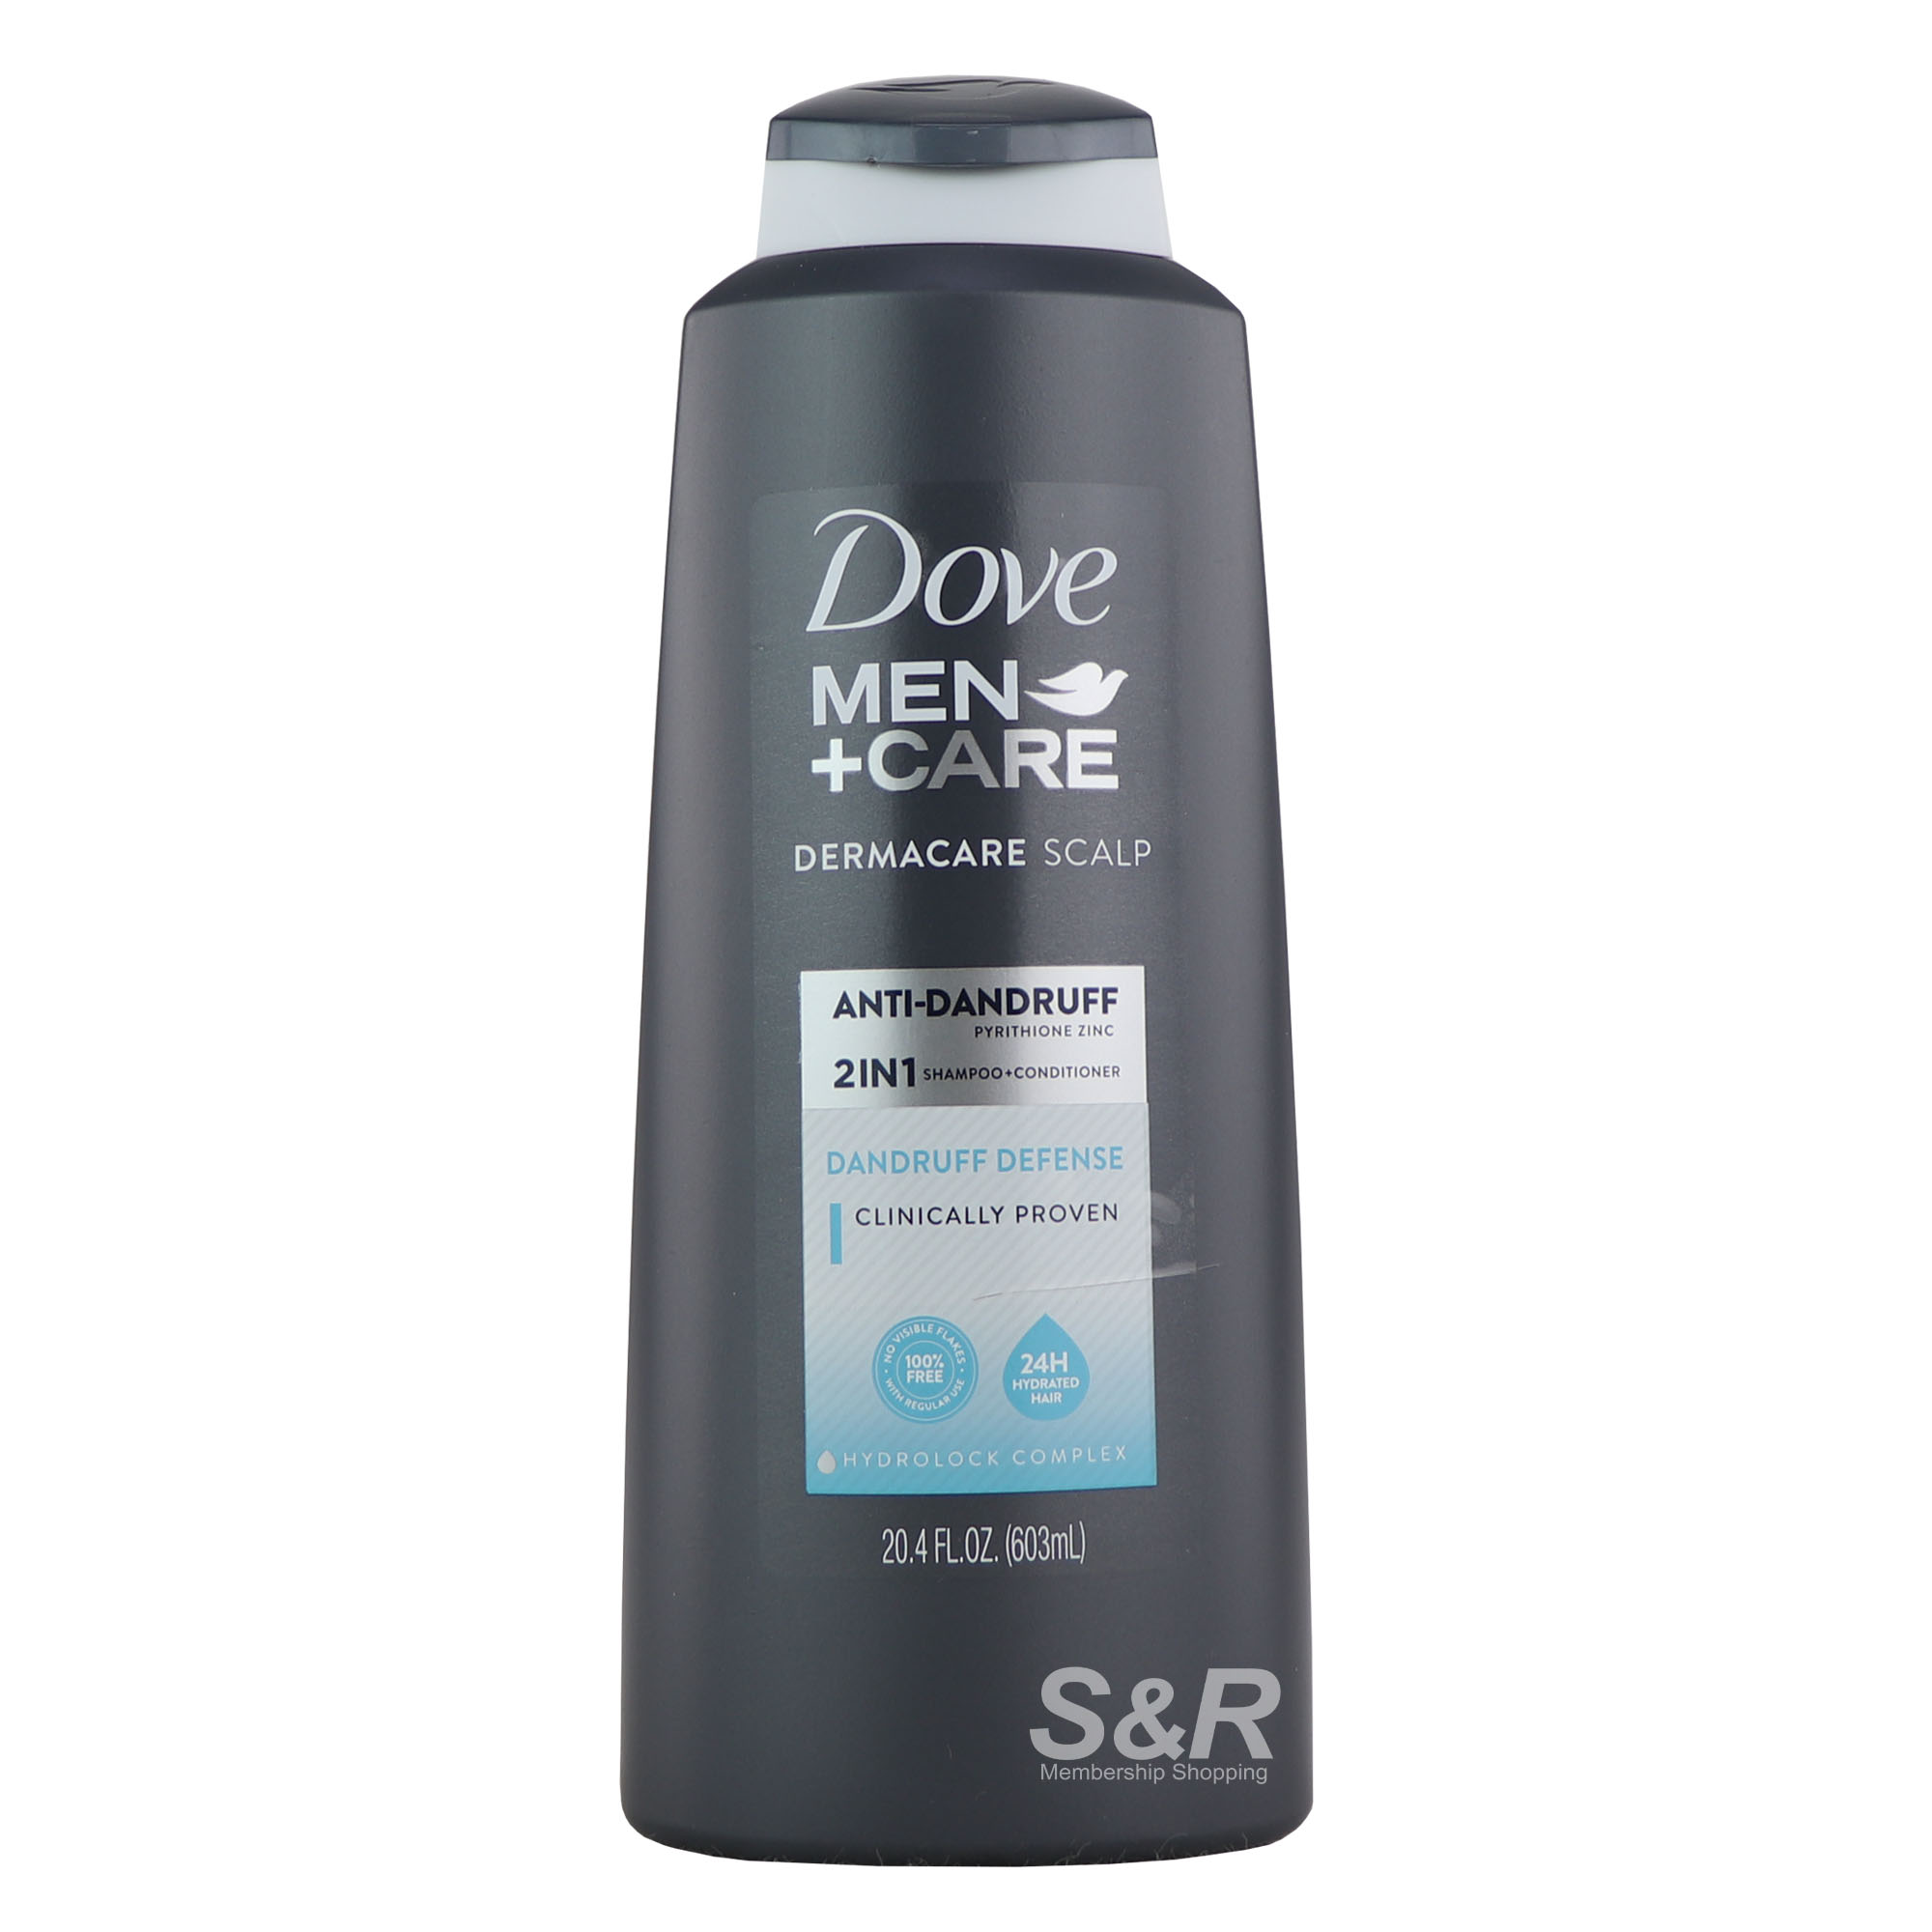 Dove Men+Care Dermacare Scalp Dandruff Defense Shampoo and Conditioner 603mL